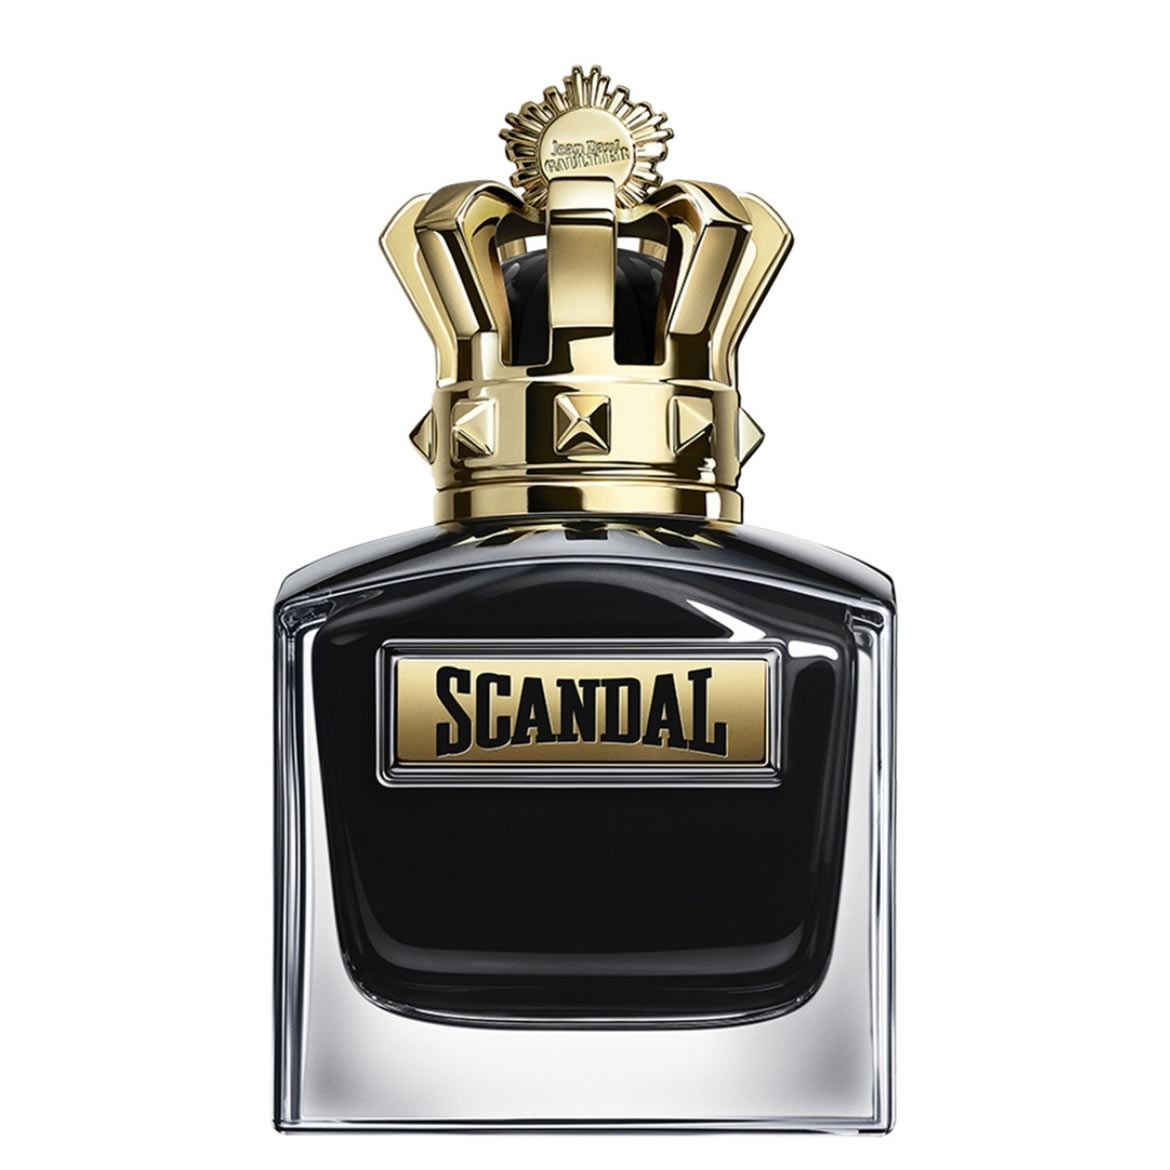 Scandal Pour Homme Le Parfum Intense Jean Paul Gaultier Image